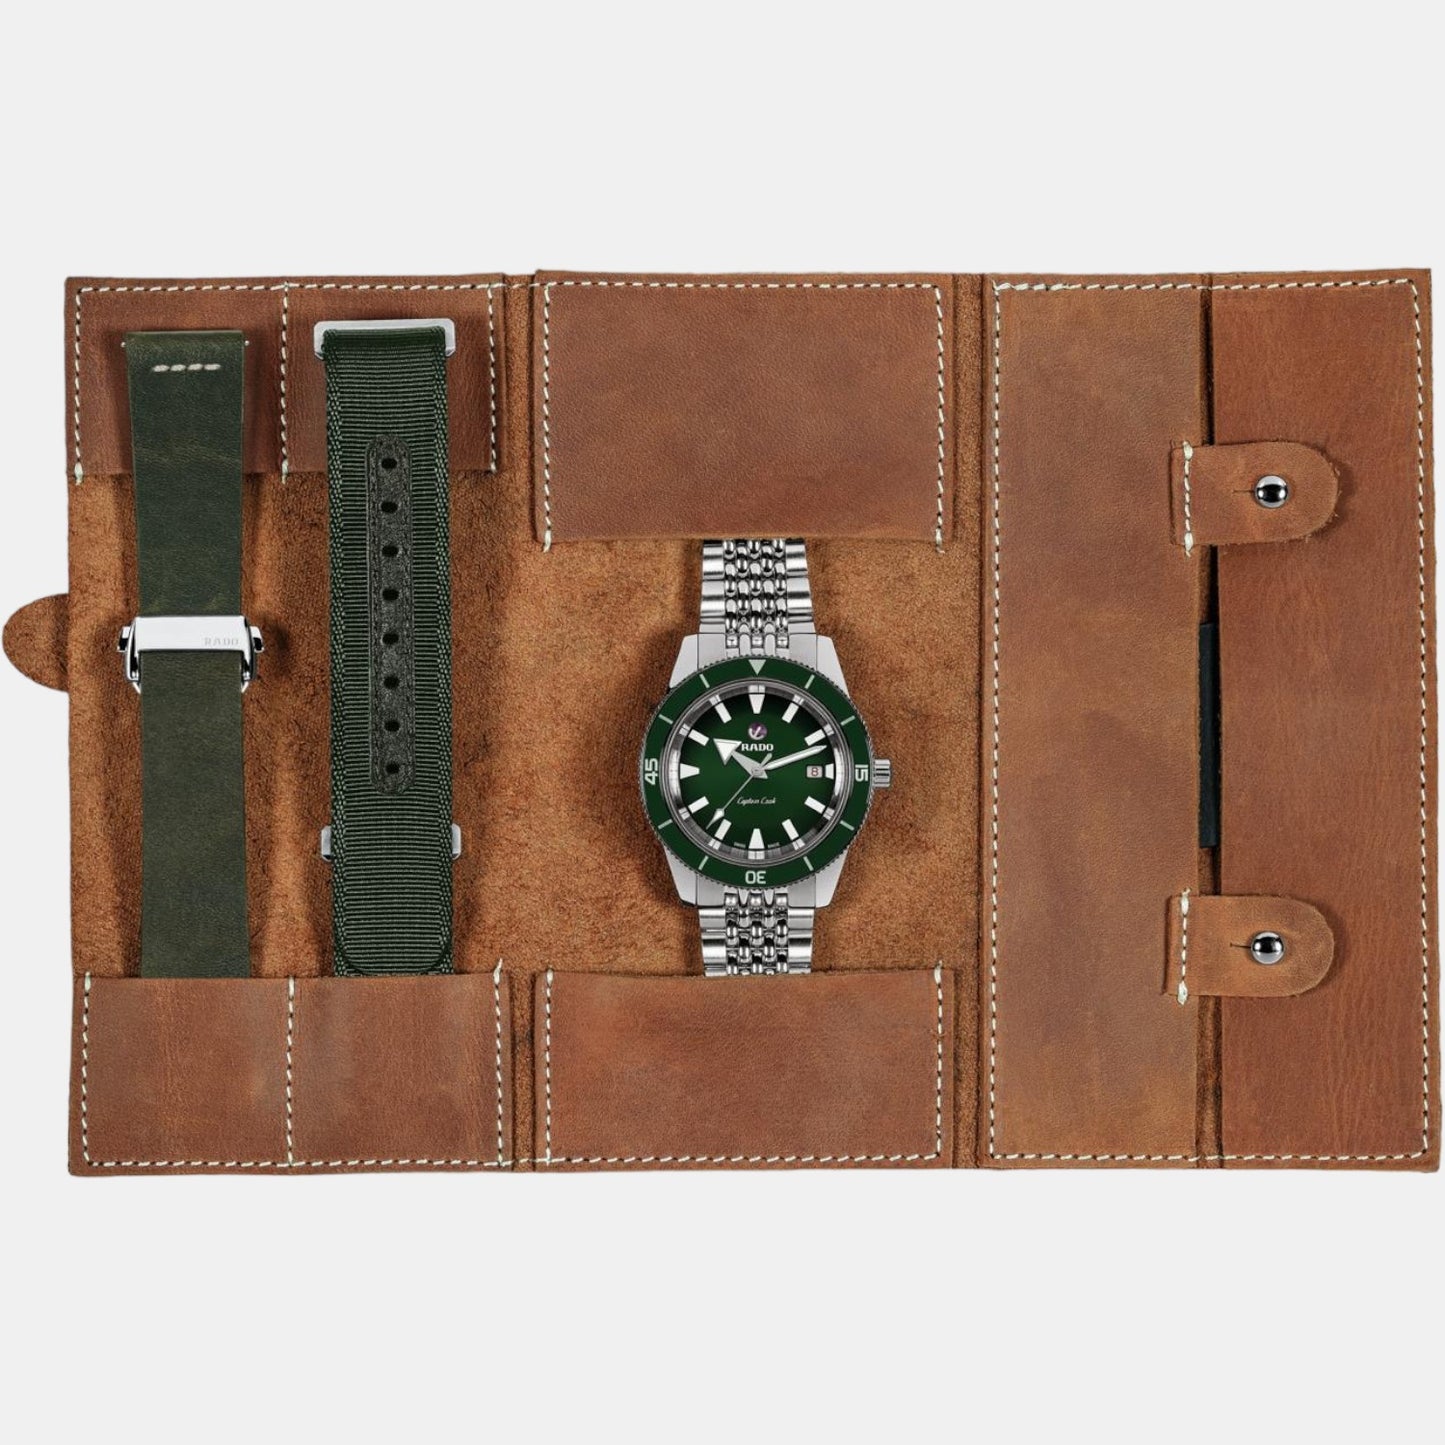 rado-stainless-steel-green-analog-men-watch-r32505318